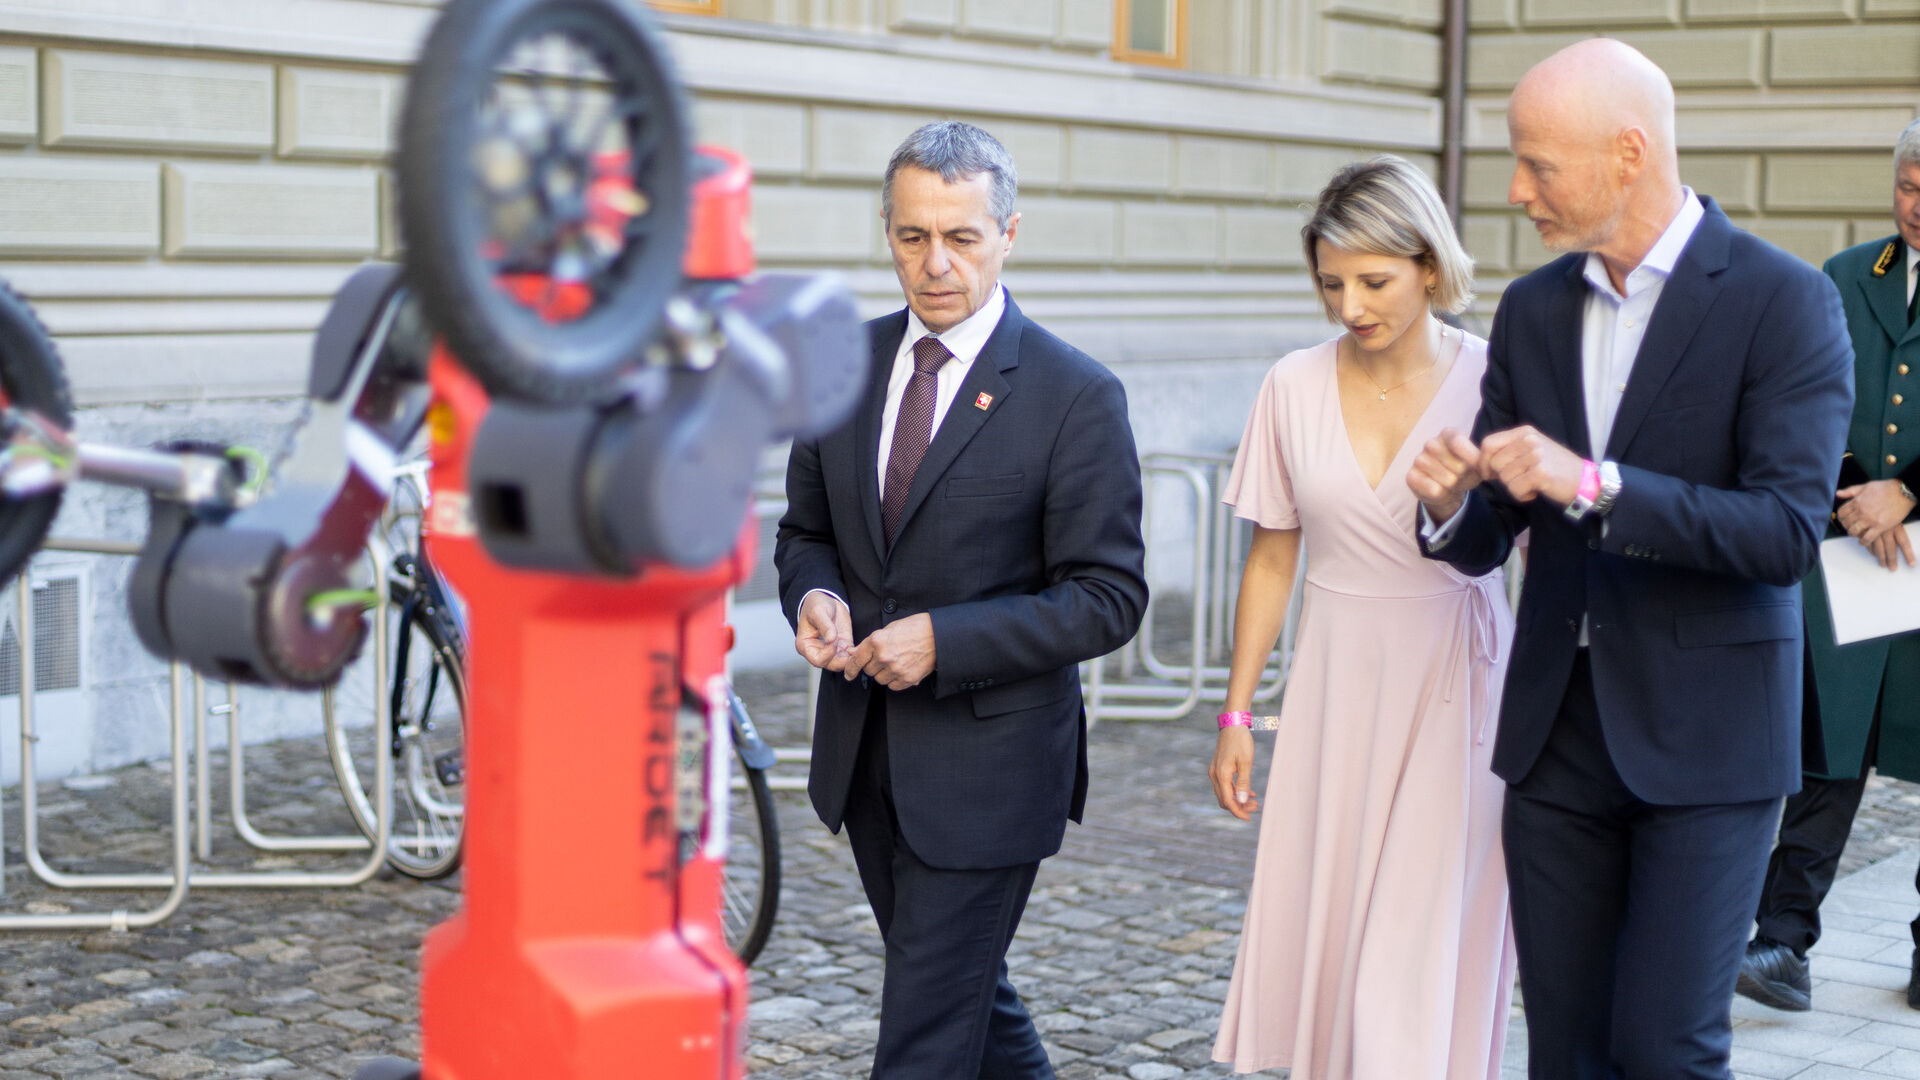 „Zilele digitale elvețiane” 2022 au fost inaugurate la Berna pe 5 septembrie